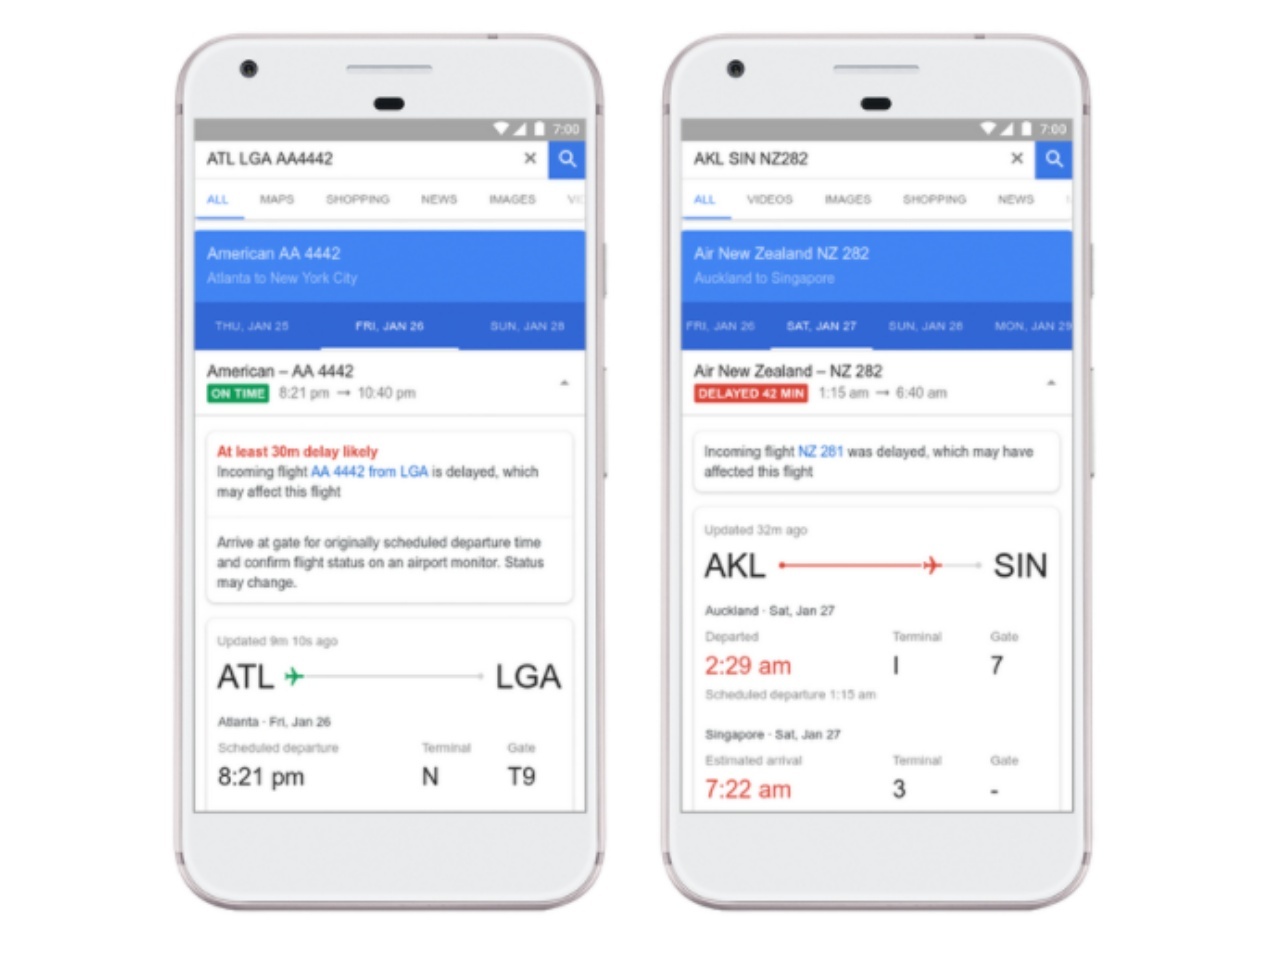 「Googleフライト」、検索したチケットを最安値で購入できる期間を提示